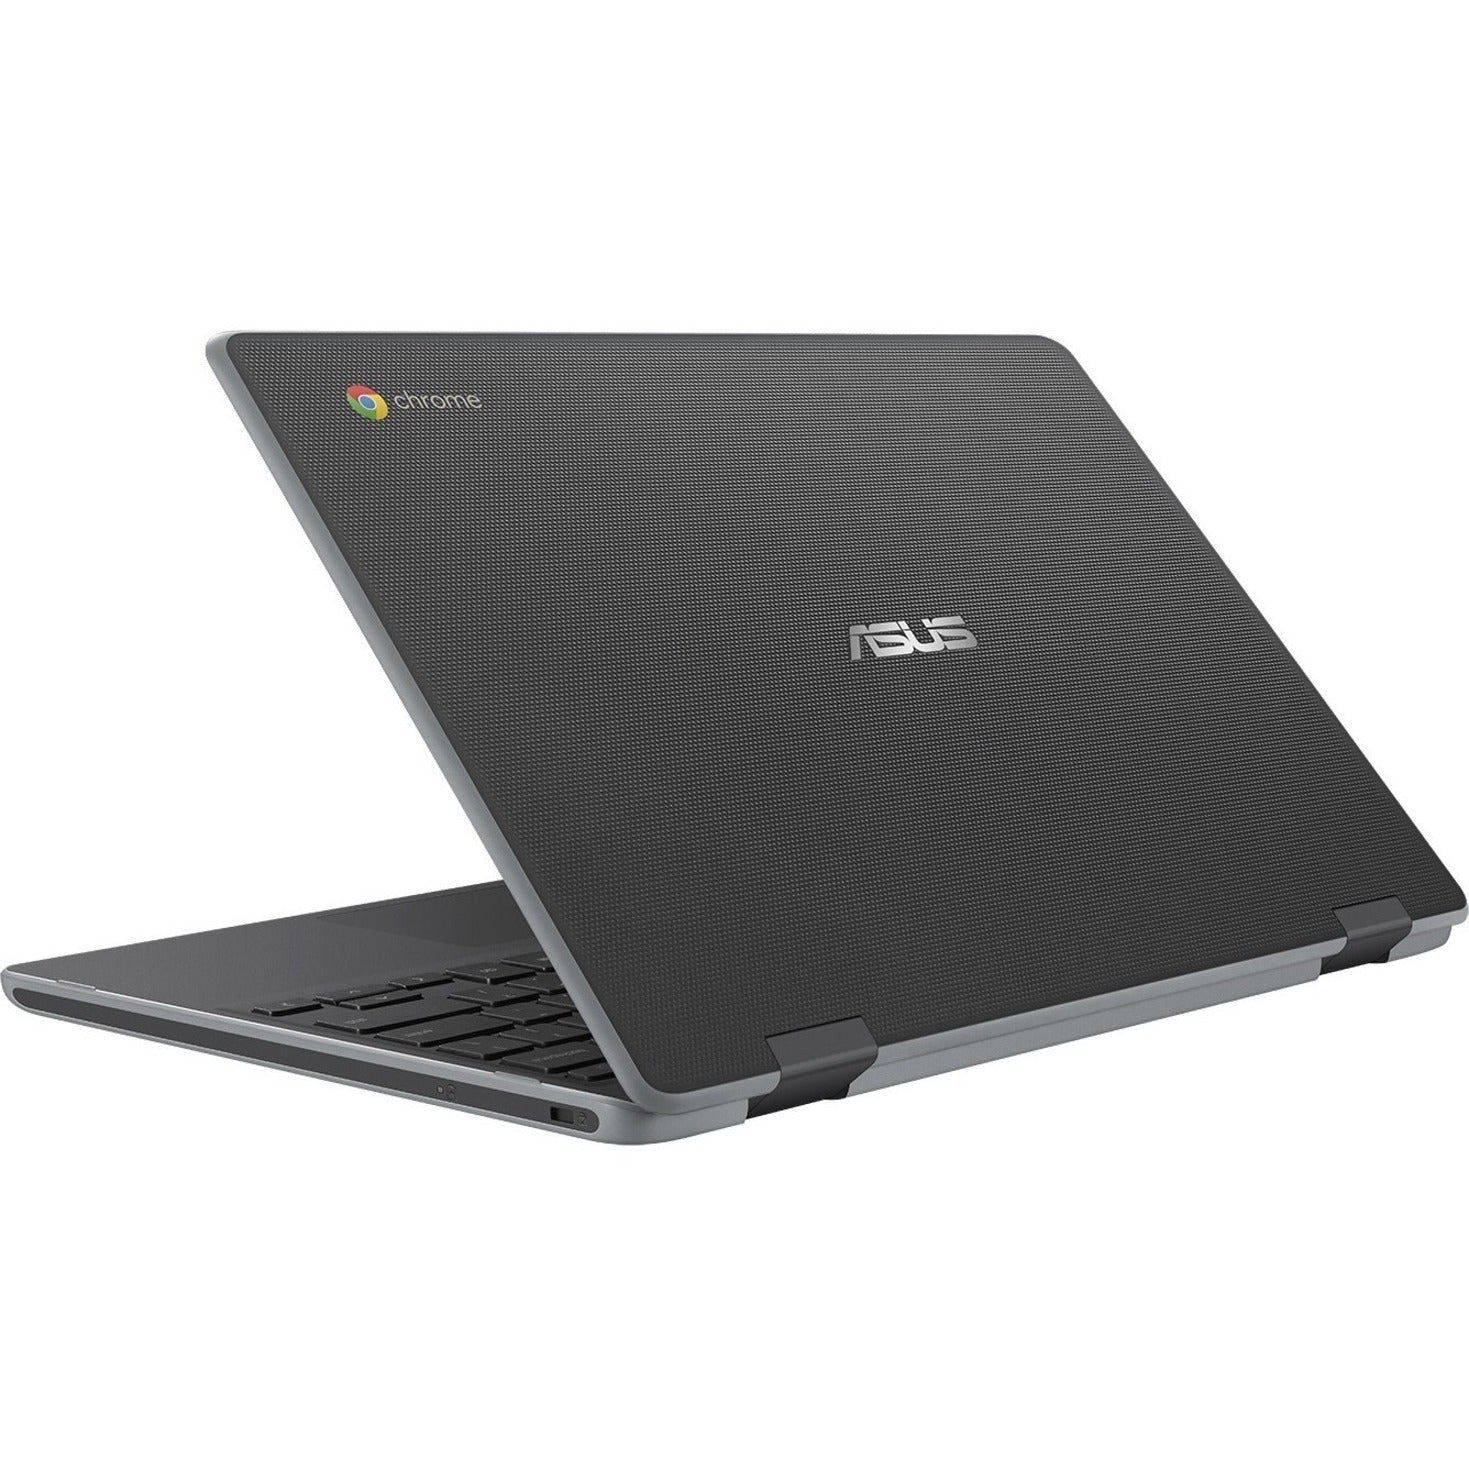 Asus C204MA-YZ02-GR Chromebook Dark Grey 11.6" HD, Intel Celeron N4020, 4GB RAM, 32GB eMMC, Chrome OS